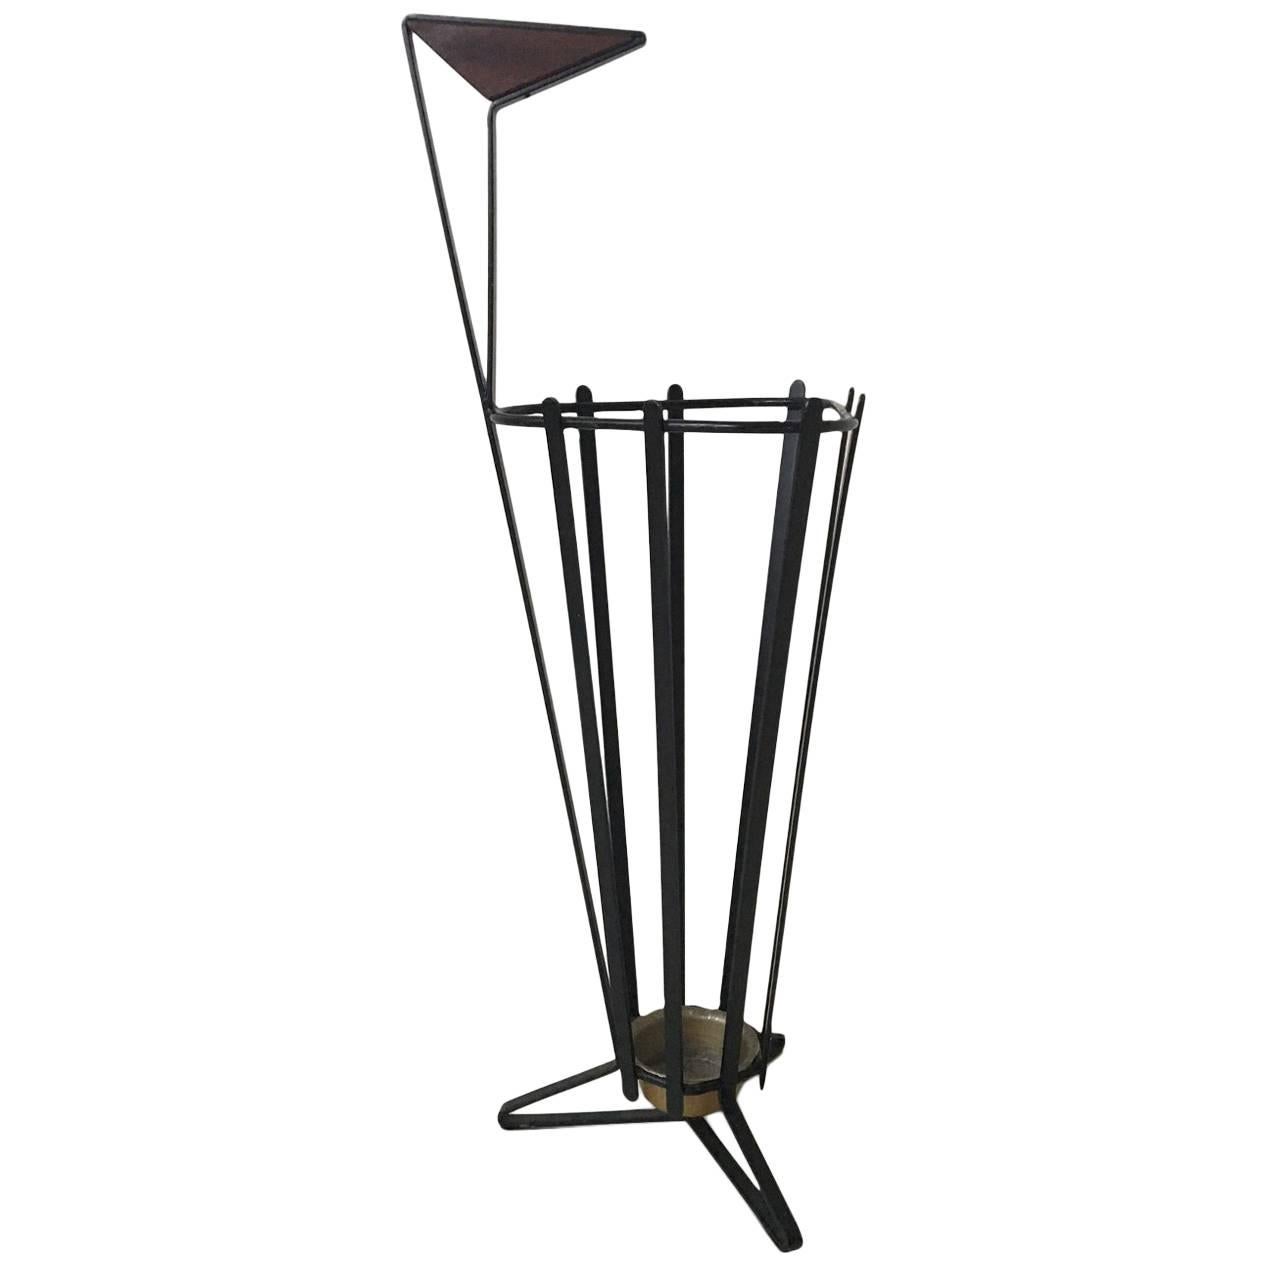 Dreibein-Schirmständer aus Metall und Teakholz im Stil von Mathieu Matgot, 1950er Jahre